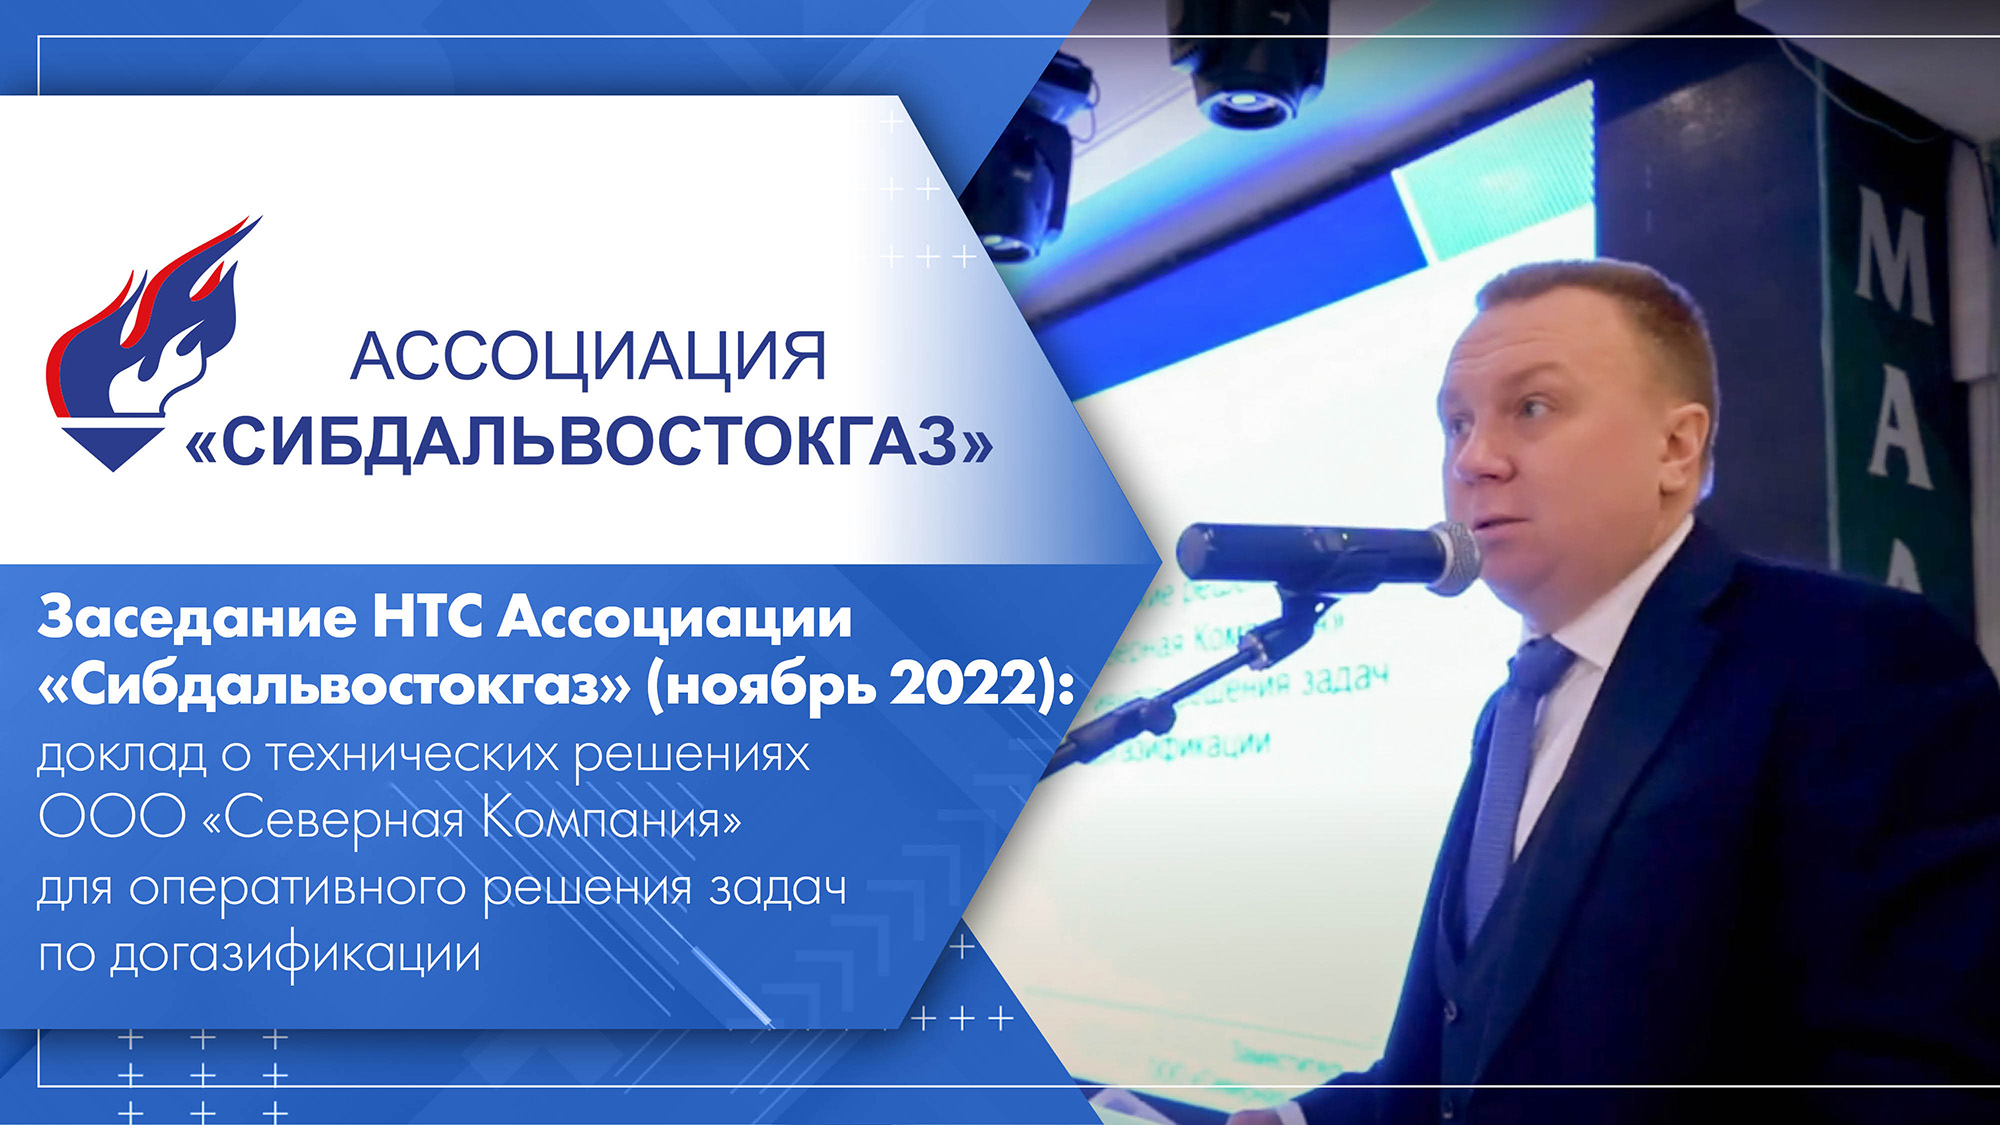 Заседание НТС Ассоциации «Сибдальвостокгаз» (ноябрь 2022) доклад ООО «Северная Компания».mp4